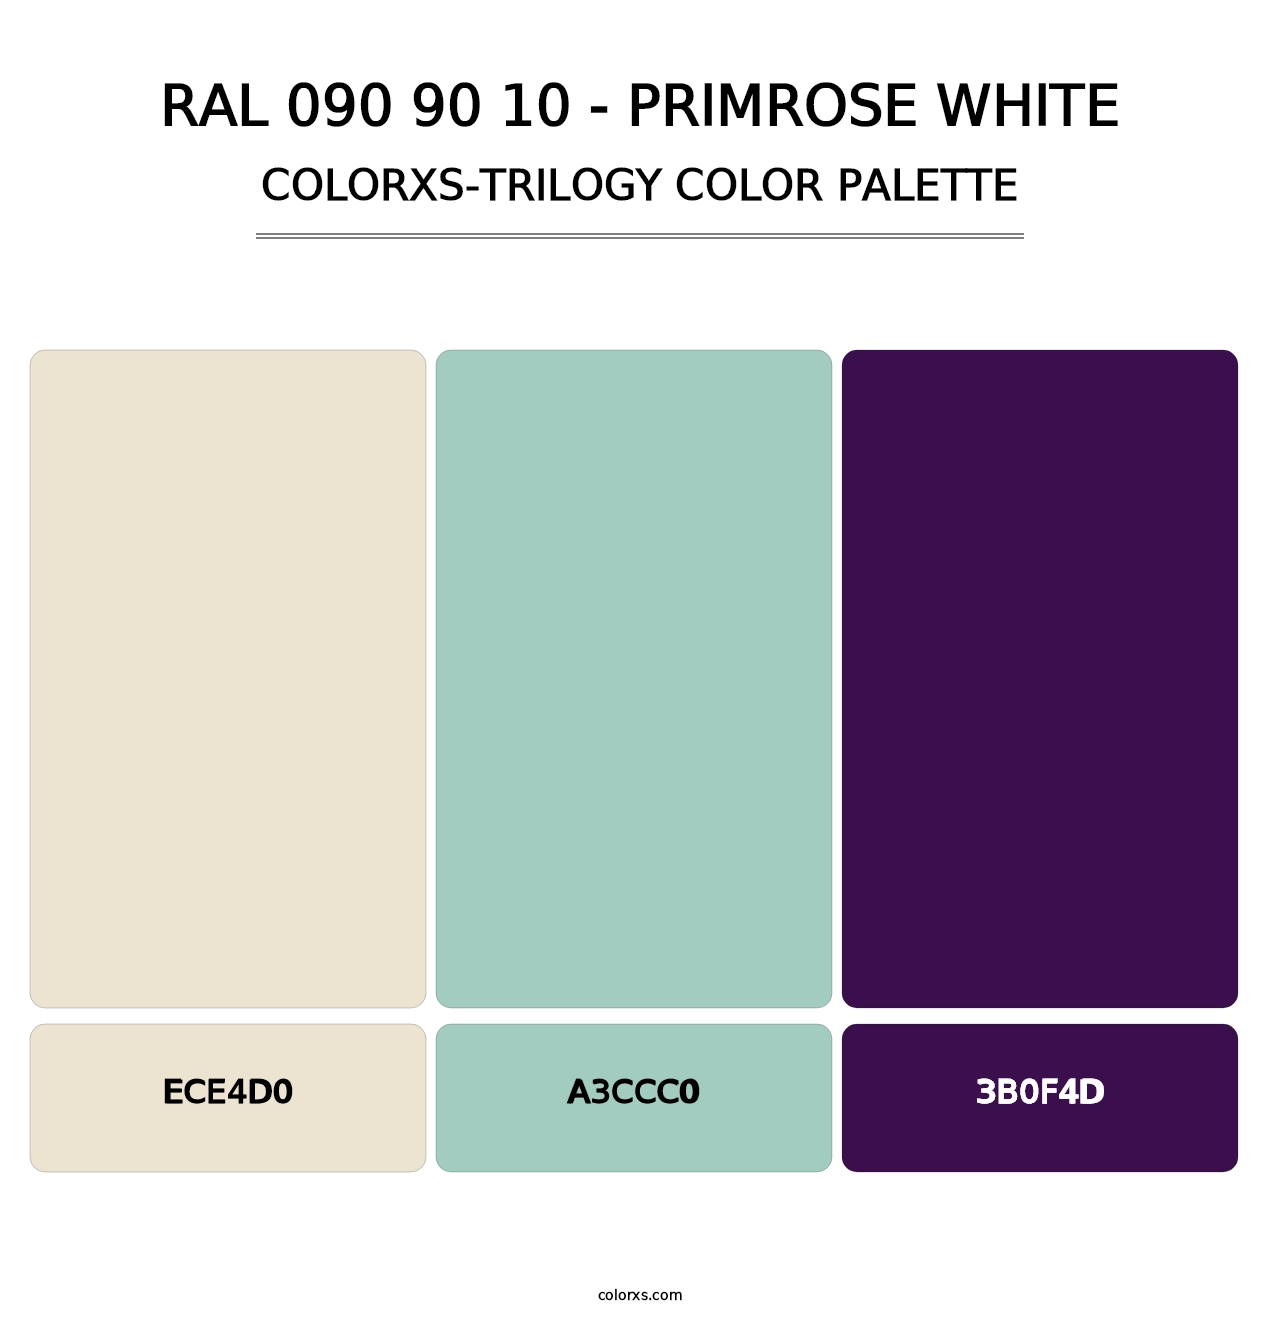 RAL 090 90 10 - Primrose White - Colorxs Trilogy Palette